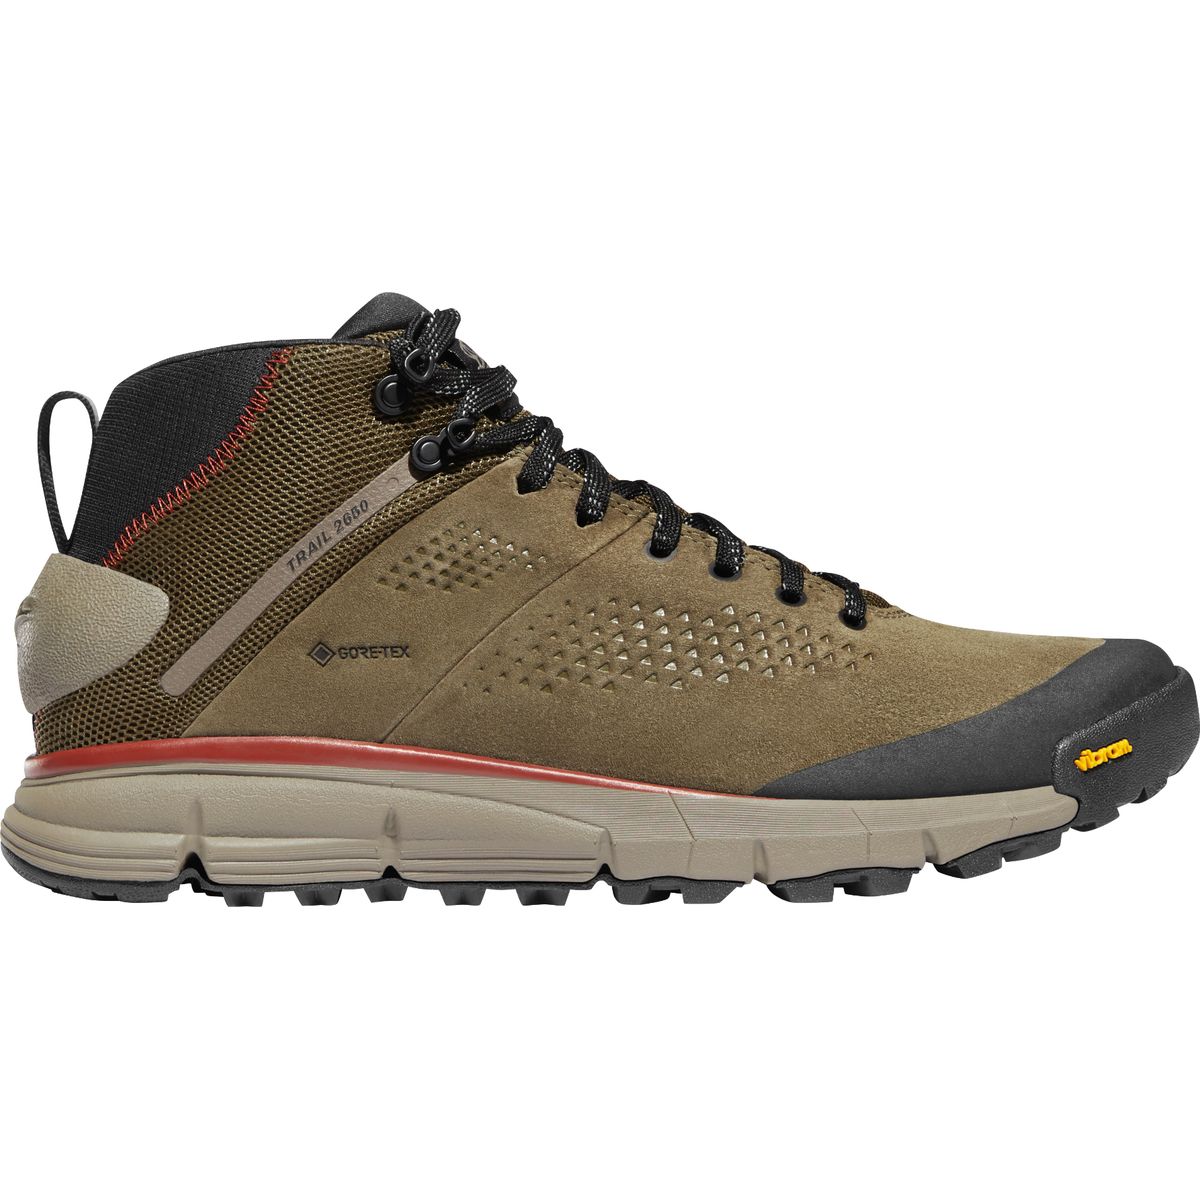 Trail 2650 GTX Mid Hiking Boot - Men